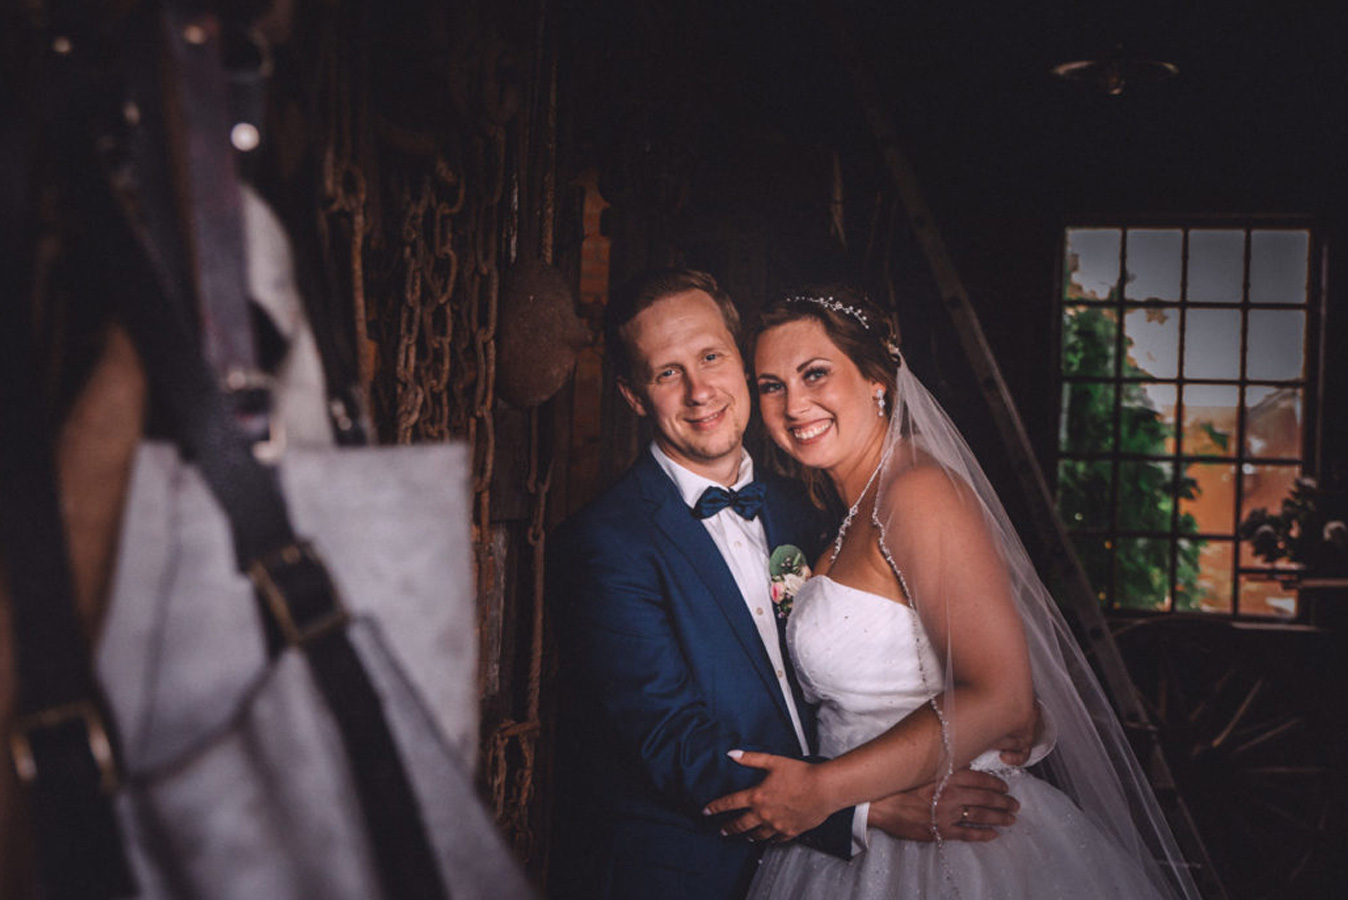 Ihre Hochzeitsfeier auf Hof Viehbrook – Hochzeitsfotografie auf dem Hof Viehbrook